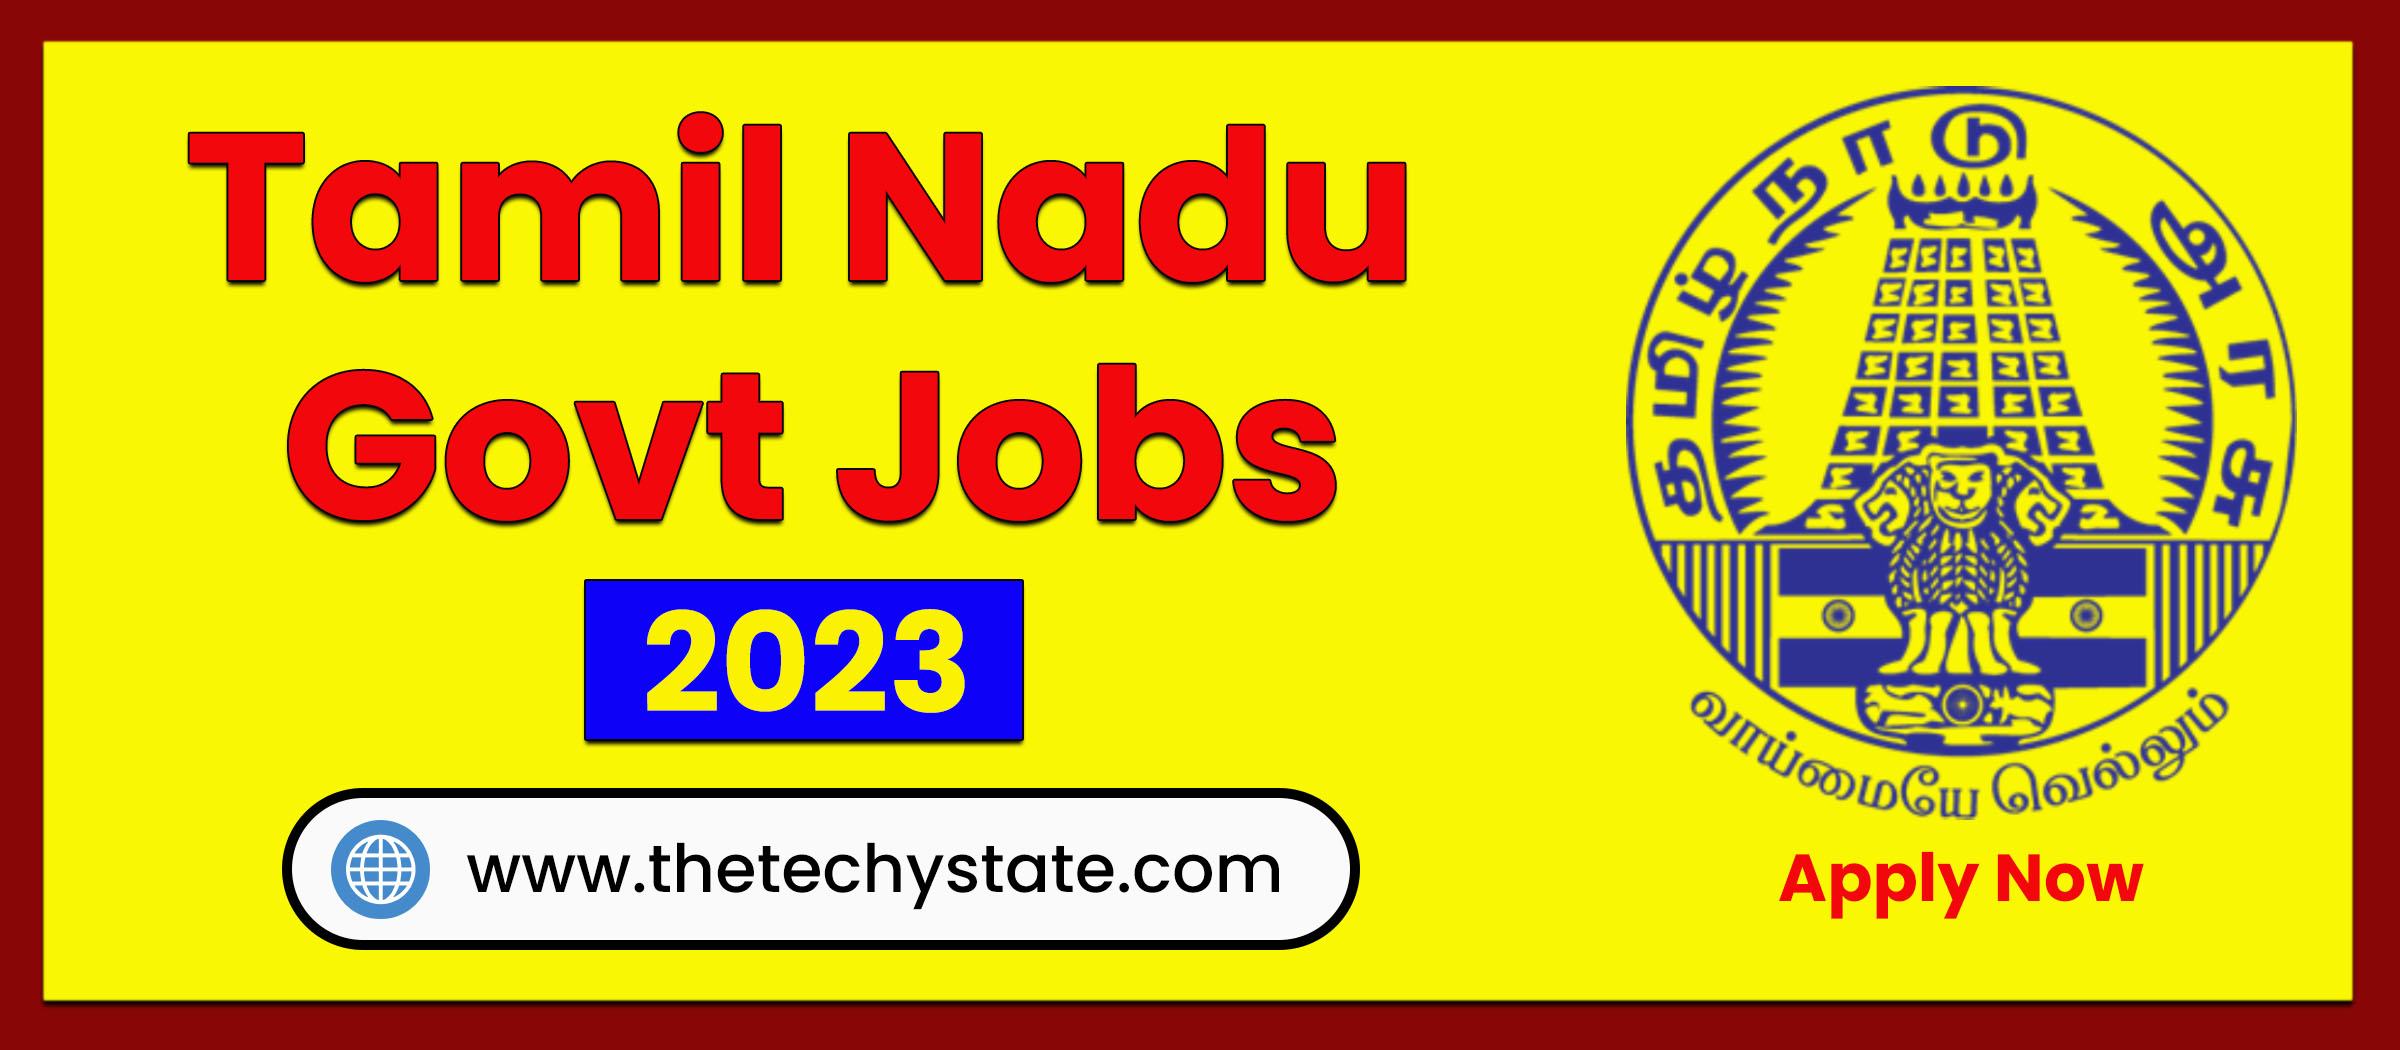 Tamil Nadu Govt Jobs New Jobs Info